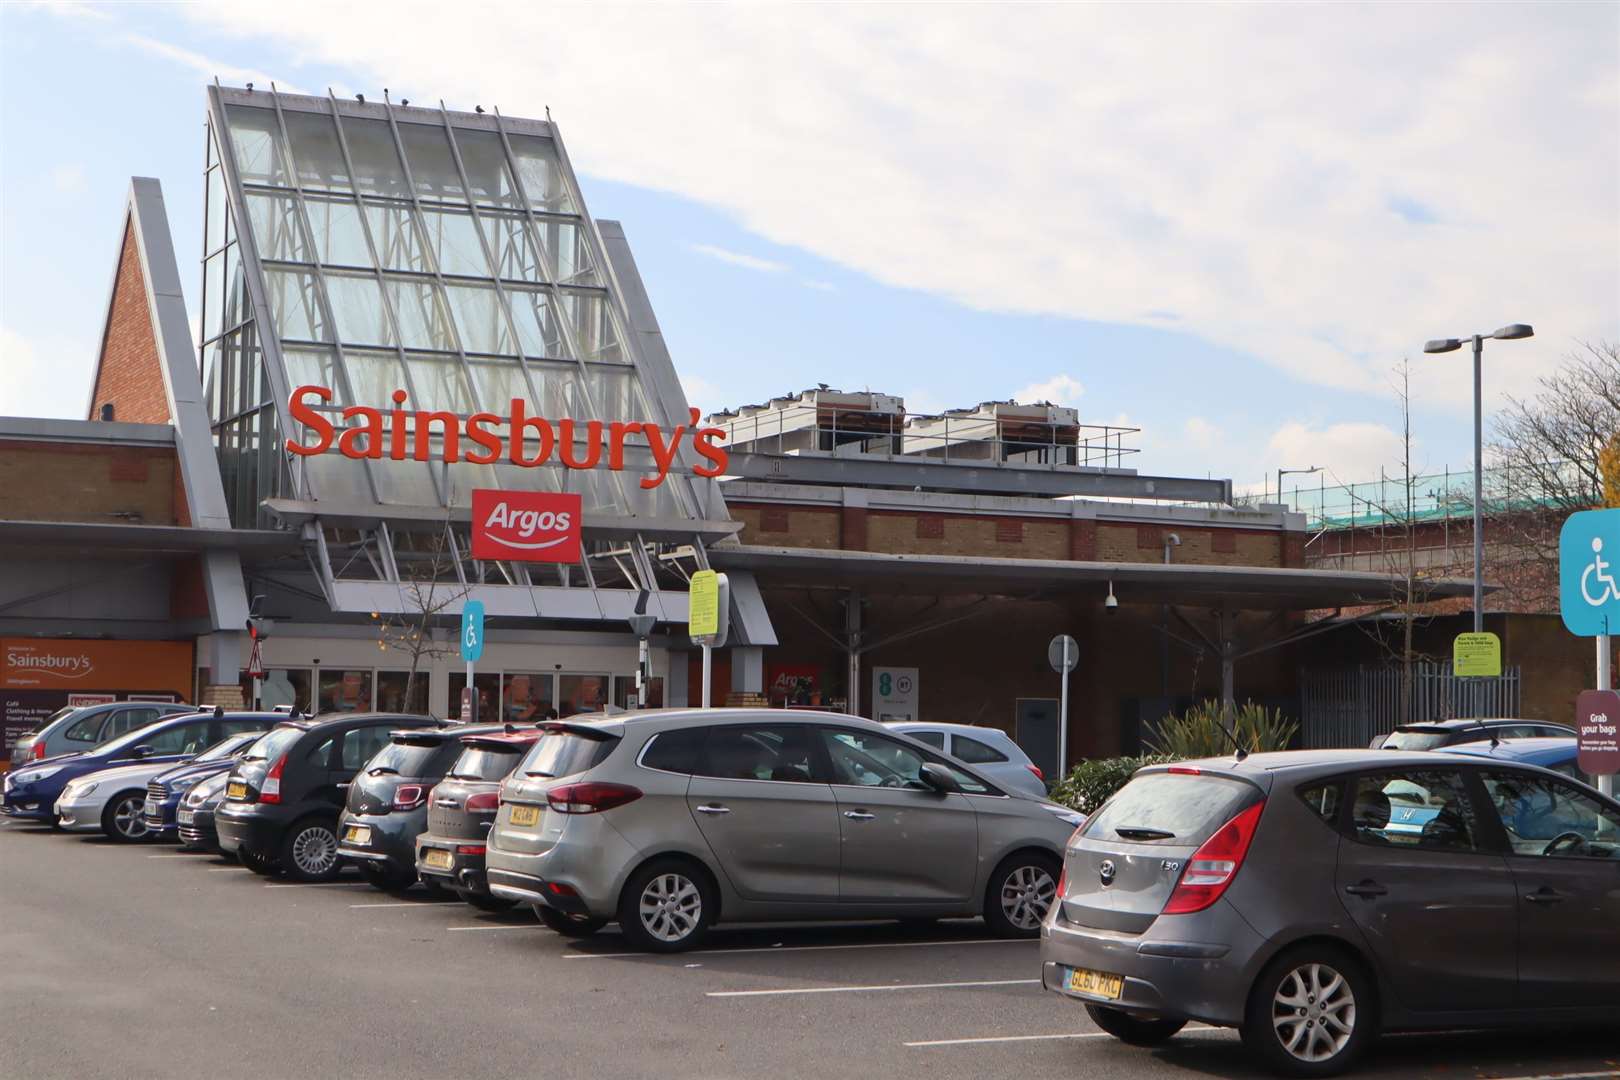 Sainsbury's took over Argos in 2016